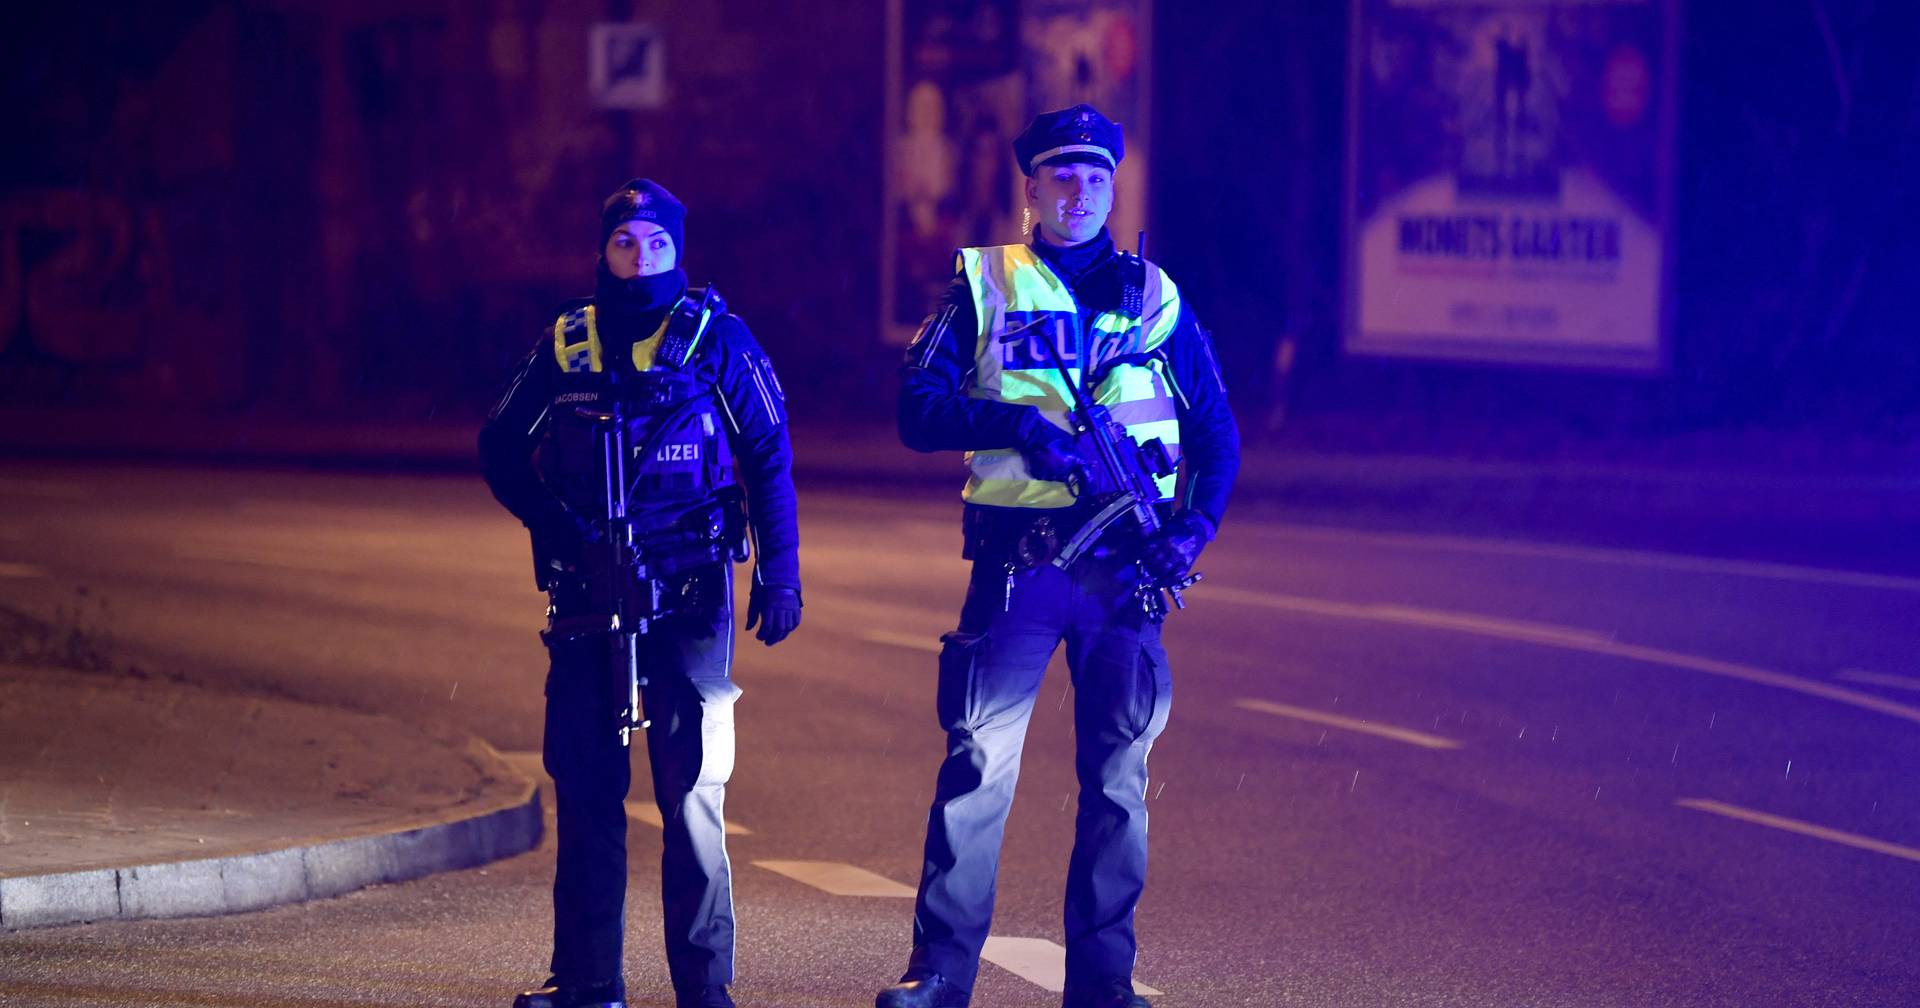 Bei einer Schießerei in Hamburg sind mehrere Menschen getötet worden